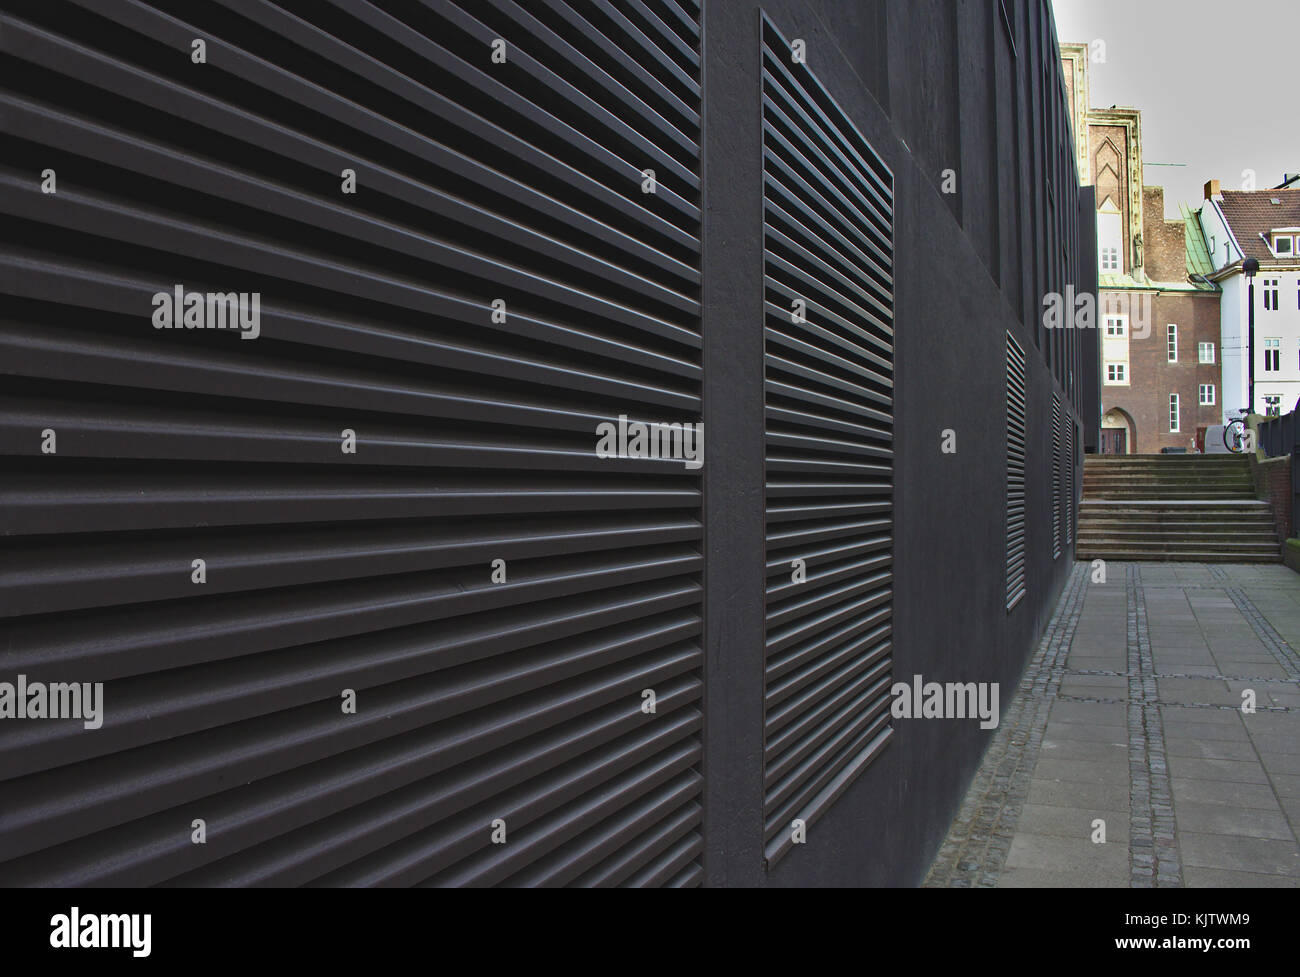 Marciapiede e parete nera con ampie bocchette di ventilazione che formano linee convergenti che conducono a passi distanti Foto Stock